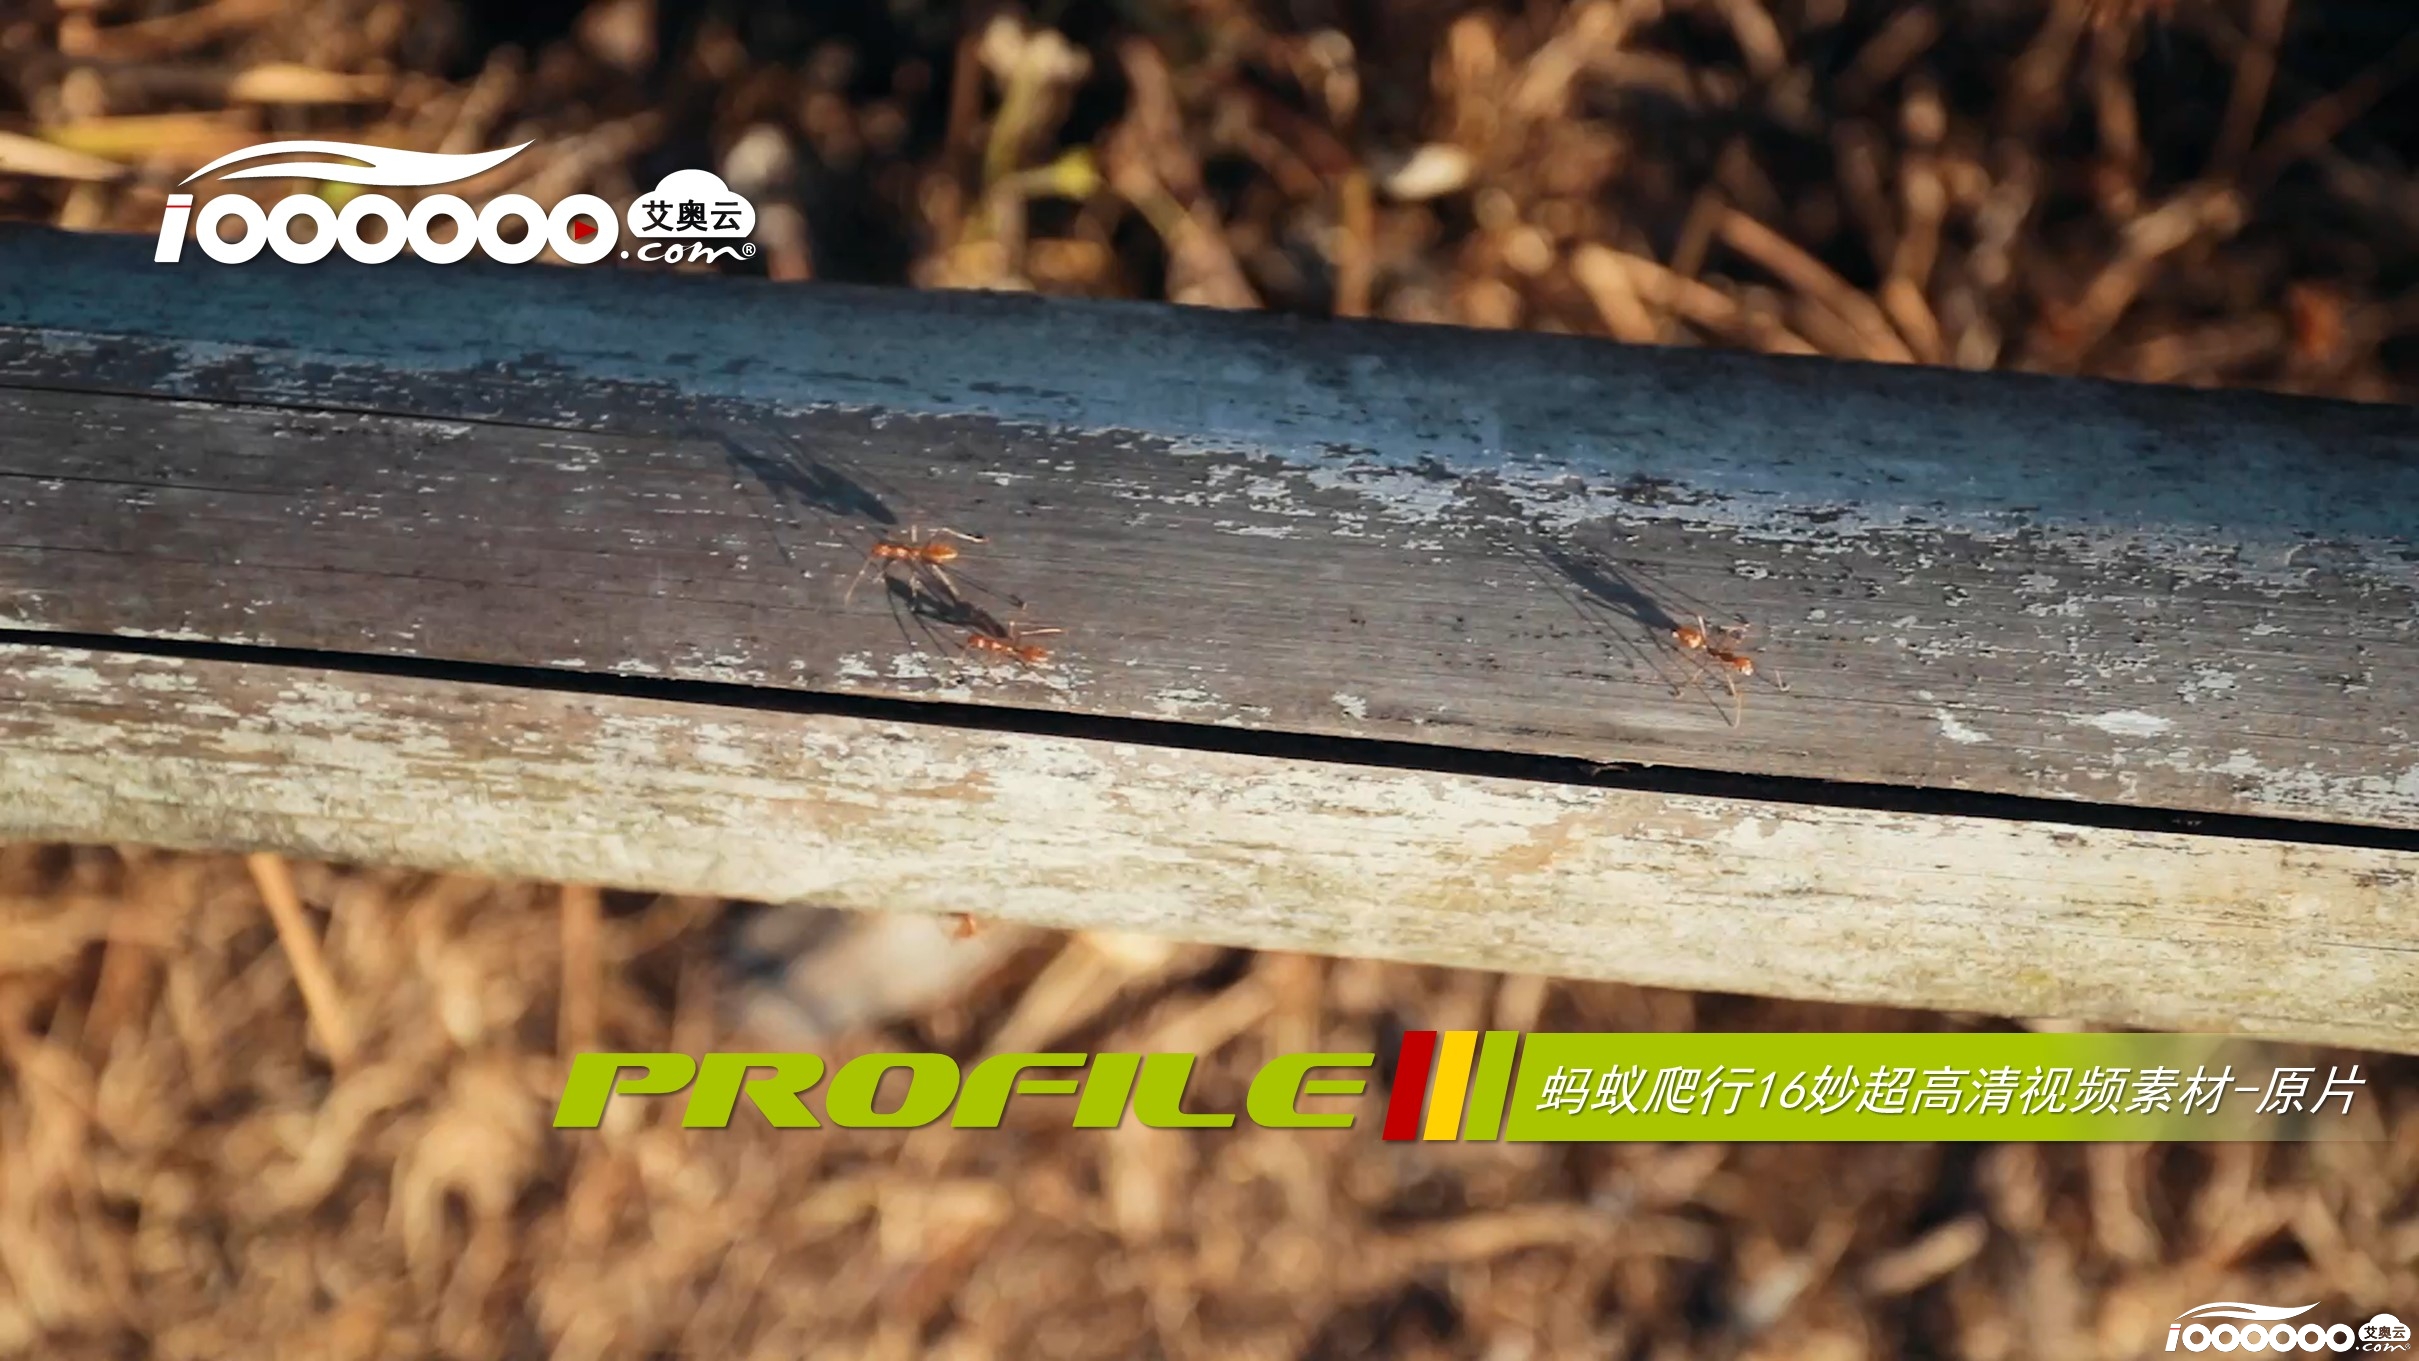 蚂蚁爬行16秒超高清视频素材原片.jpg